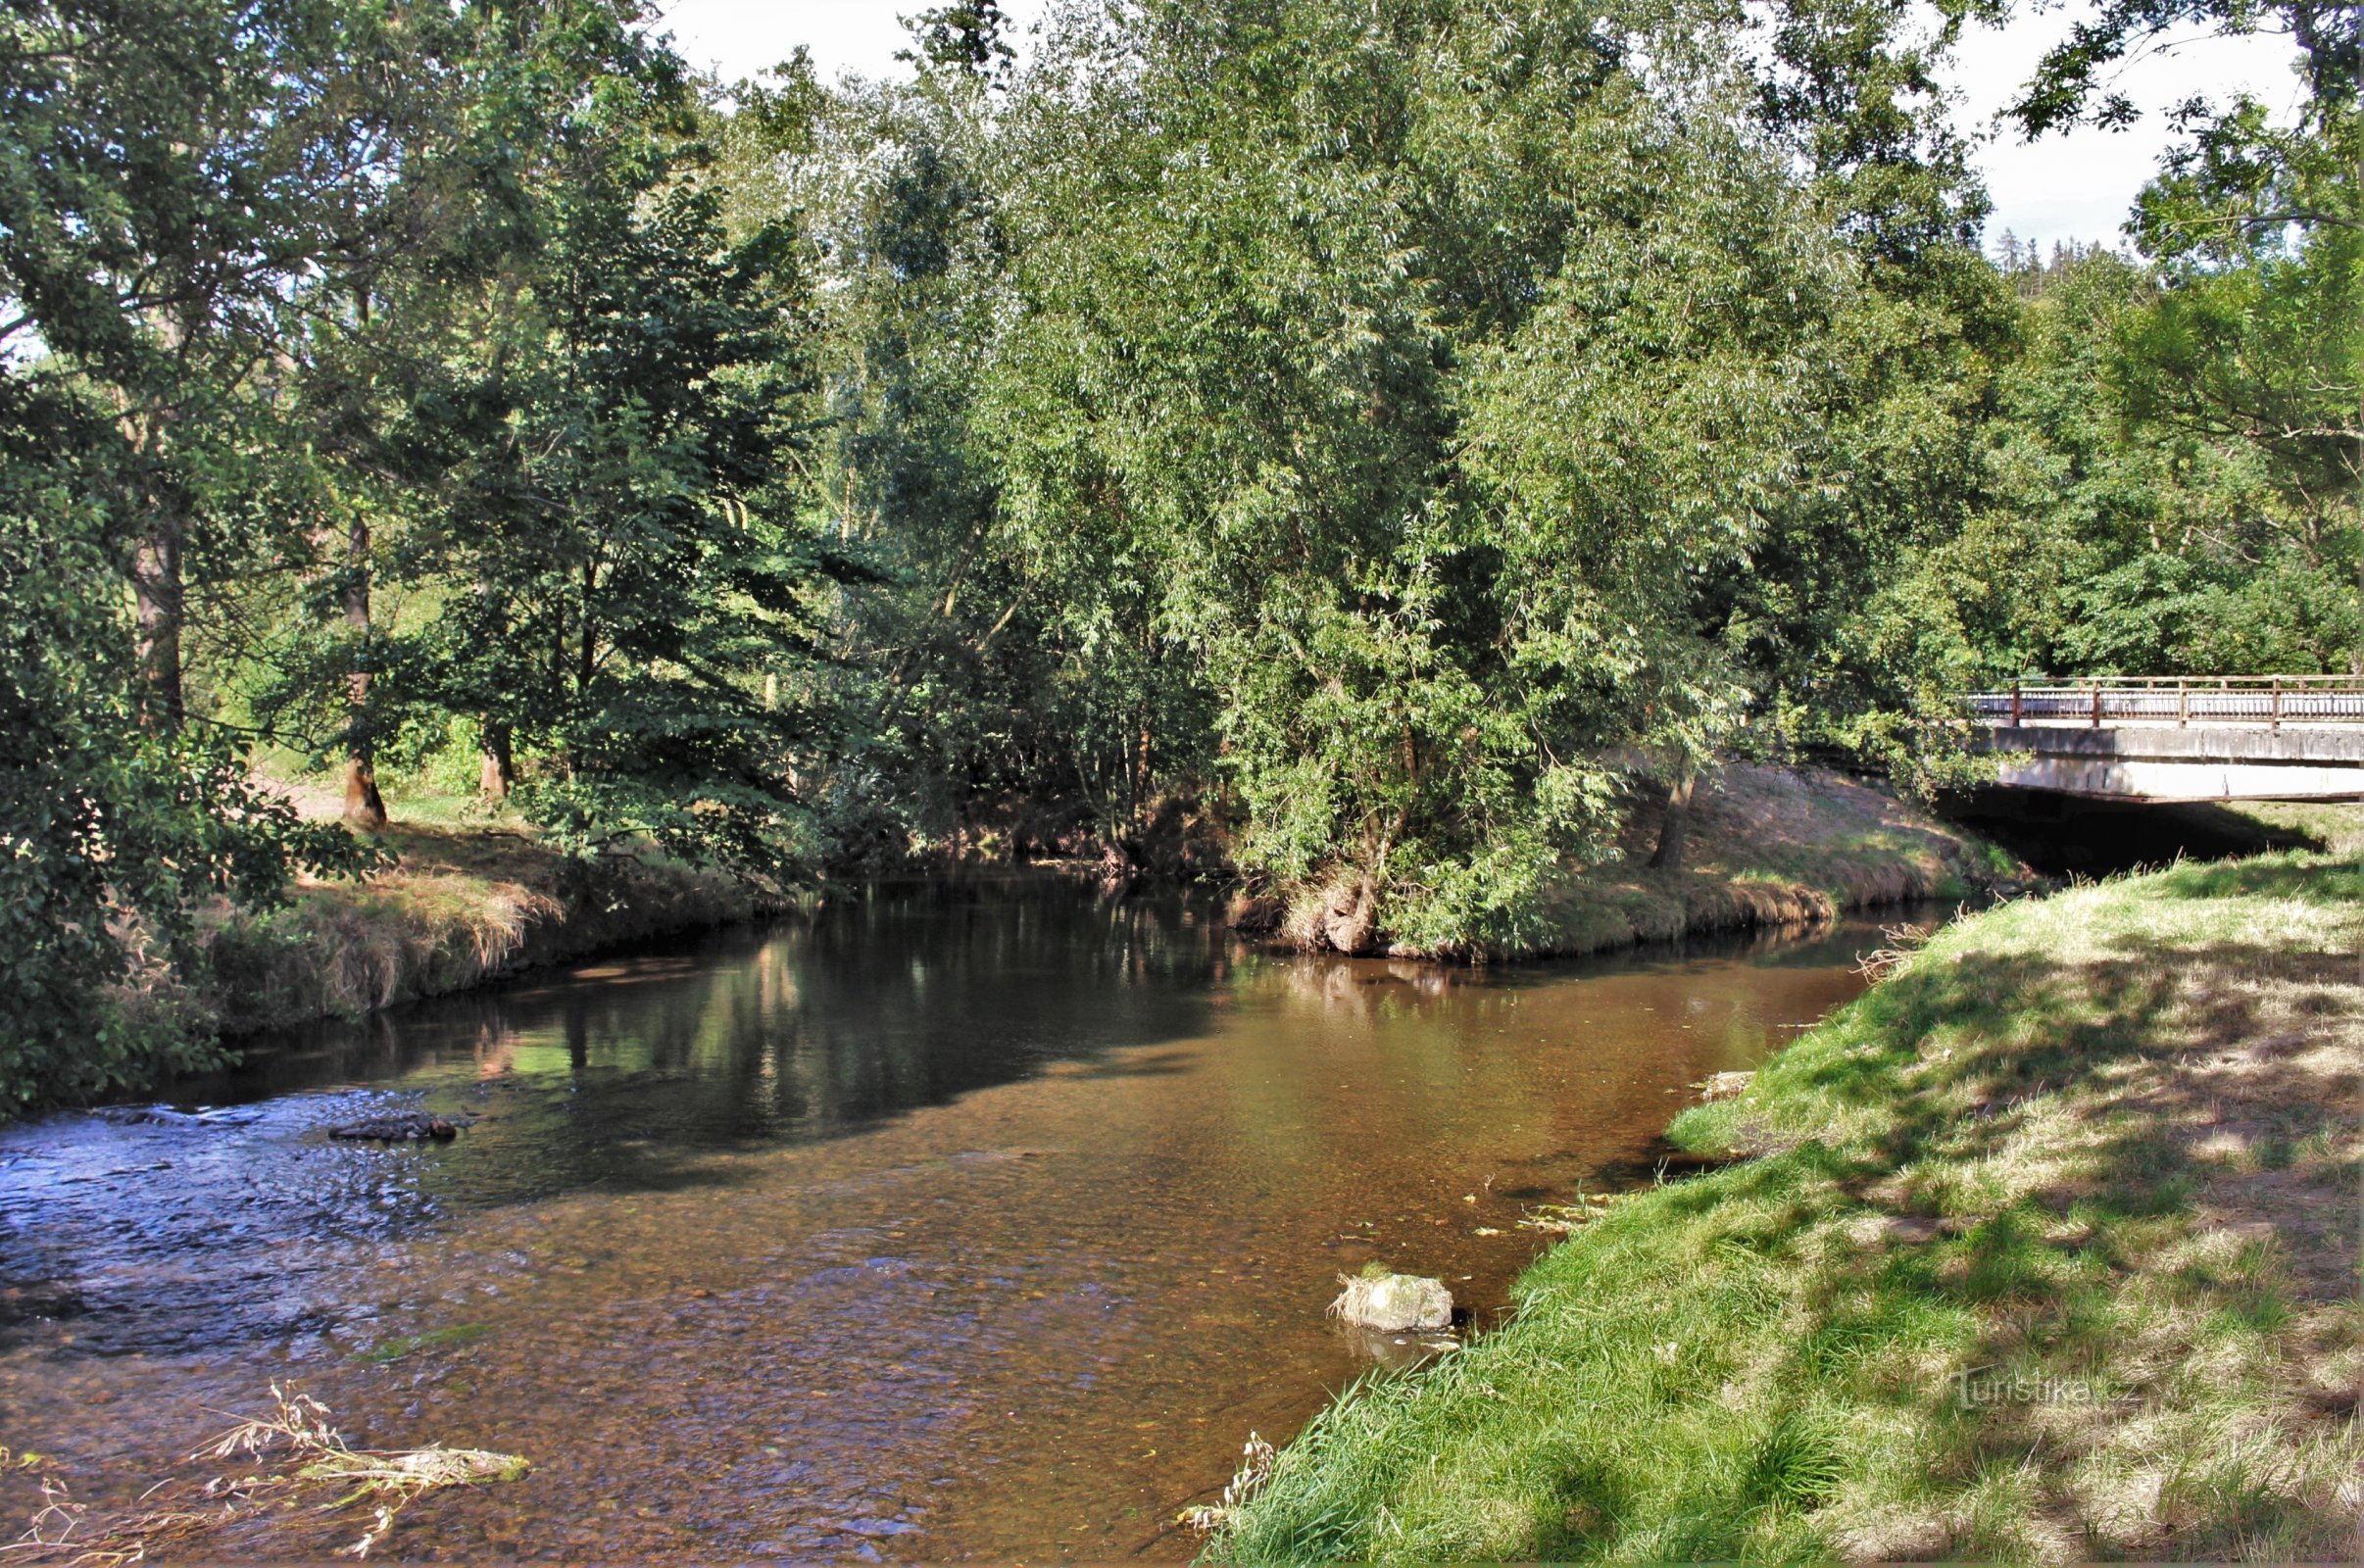 De rivier de Svitava stroomt van links, de rivier de Bělá vanaf de brug van rechts